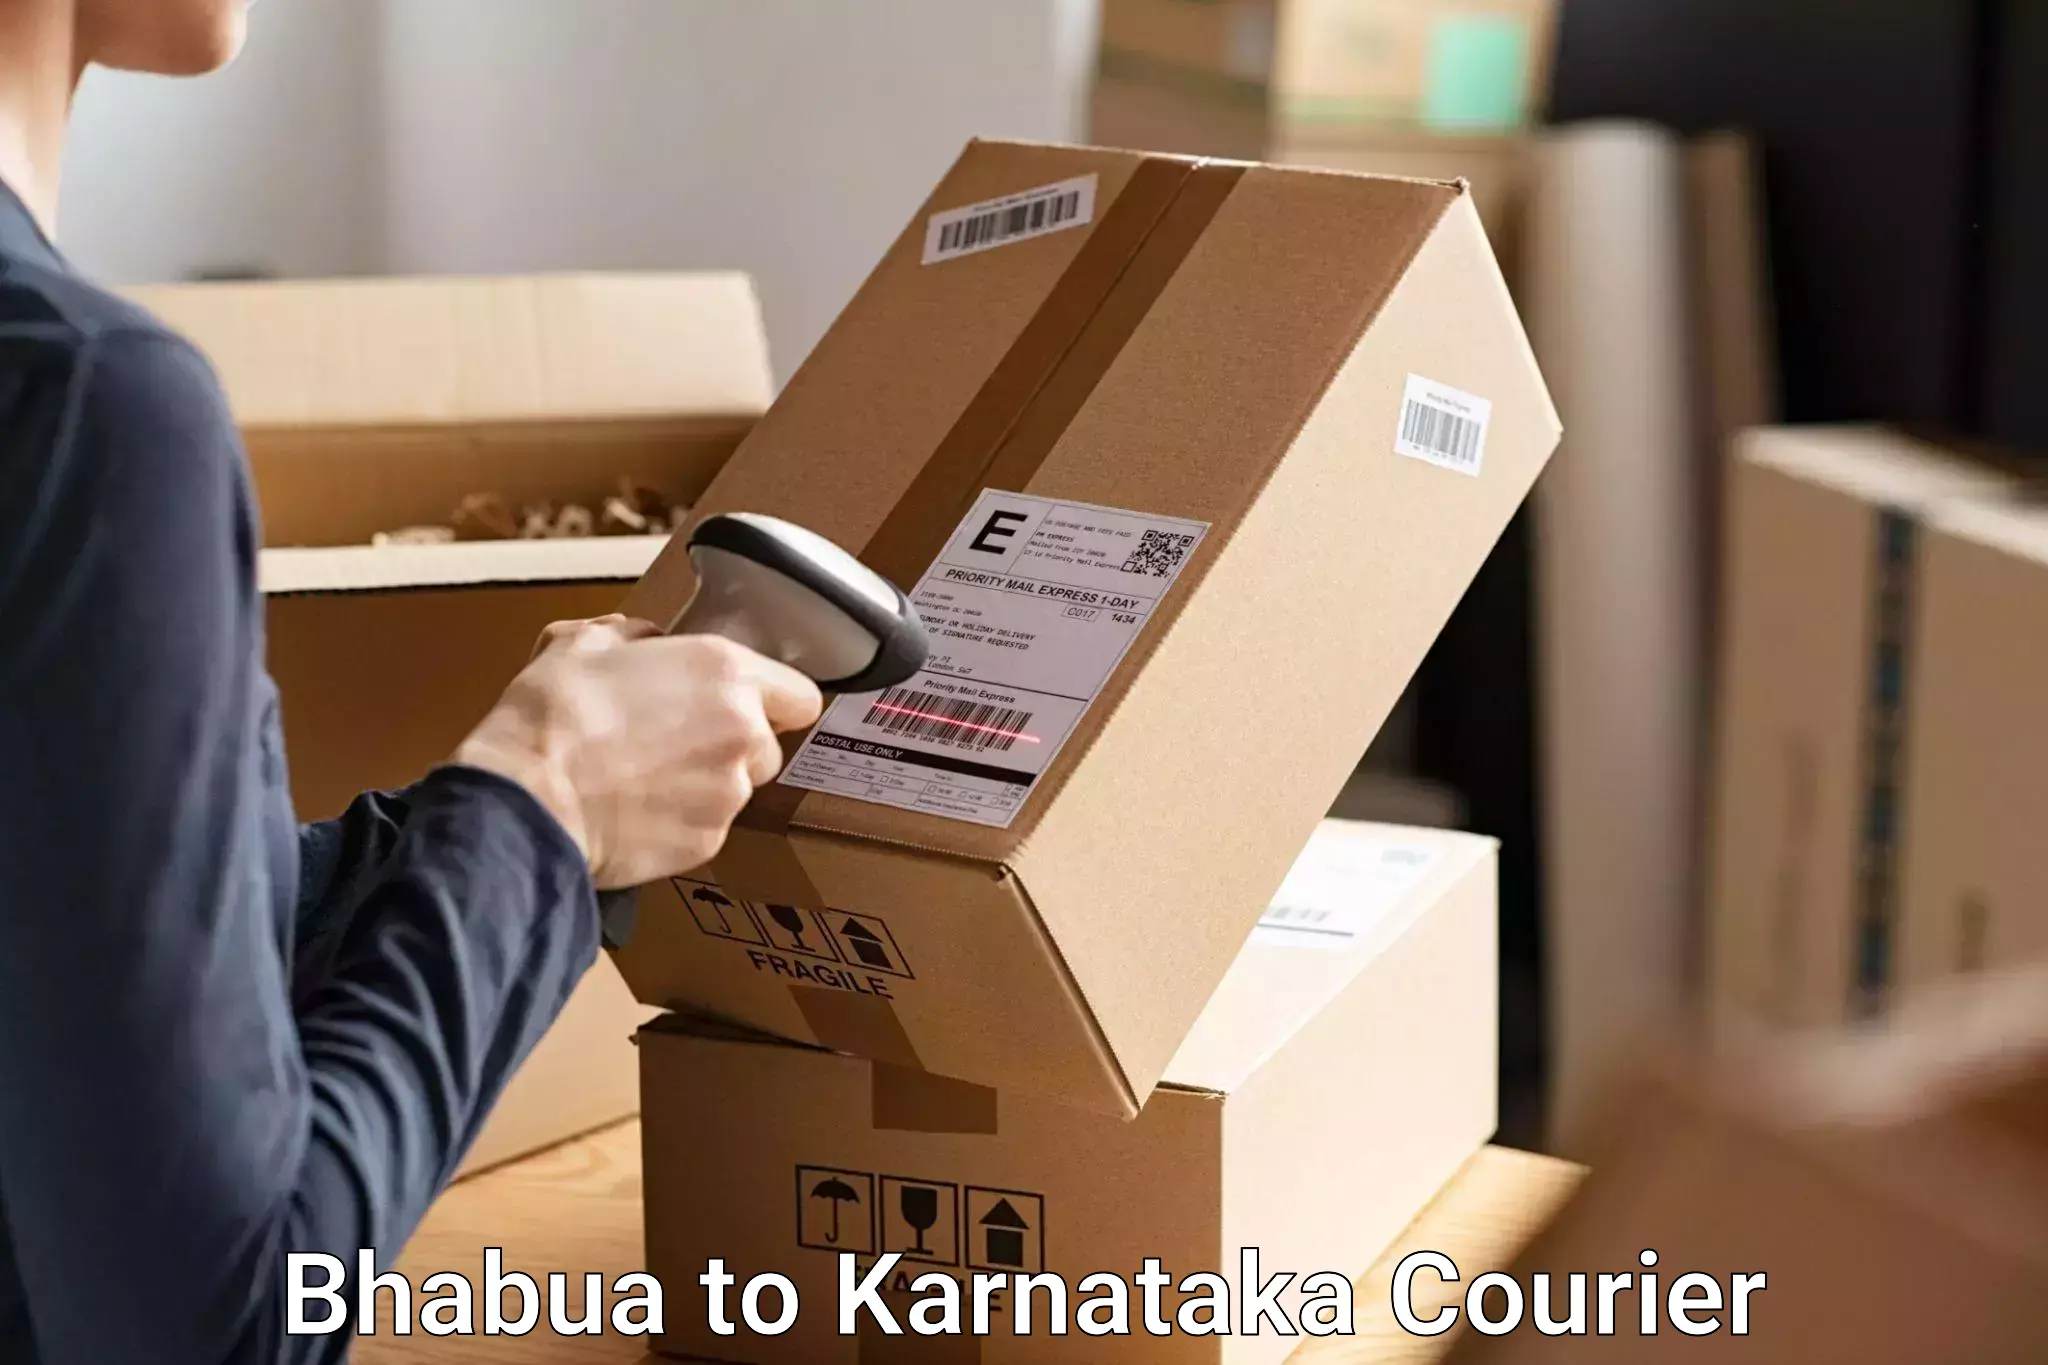 Luggage shipment specialists Bhabua to Dharmasthala